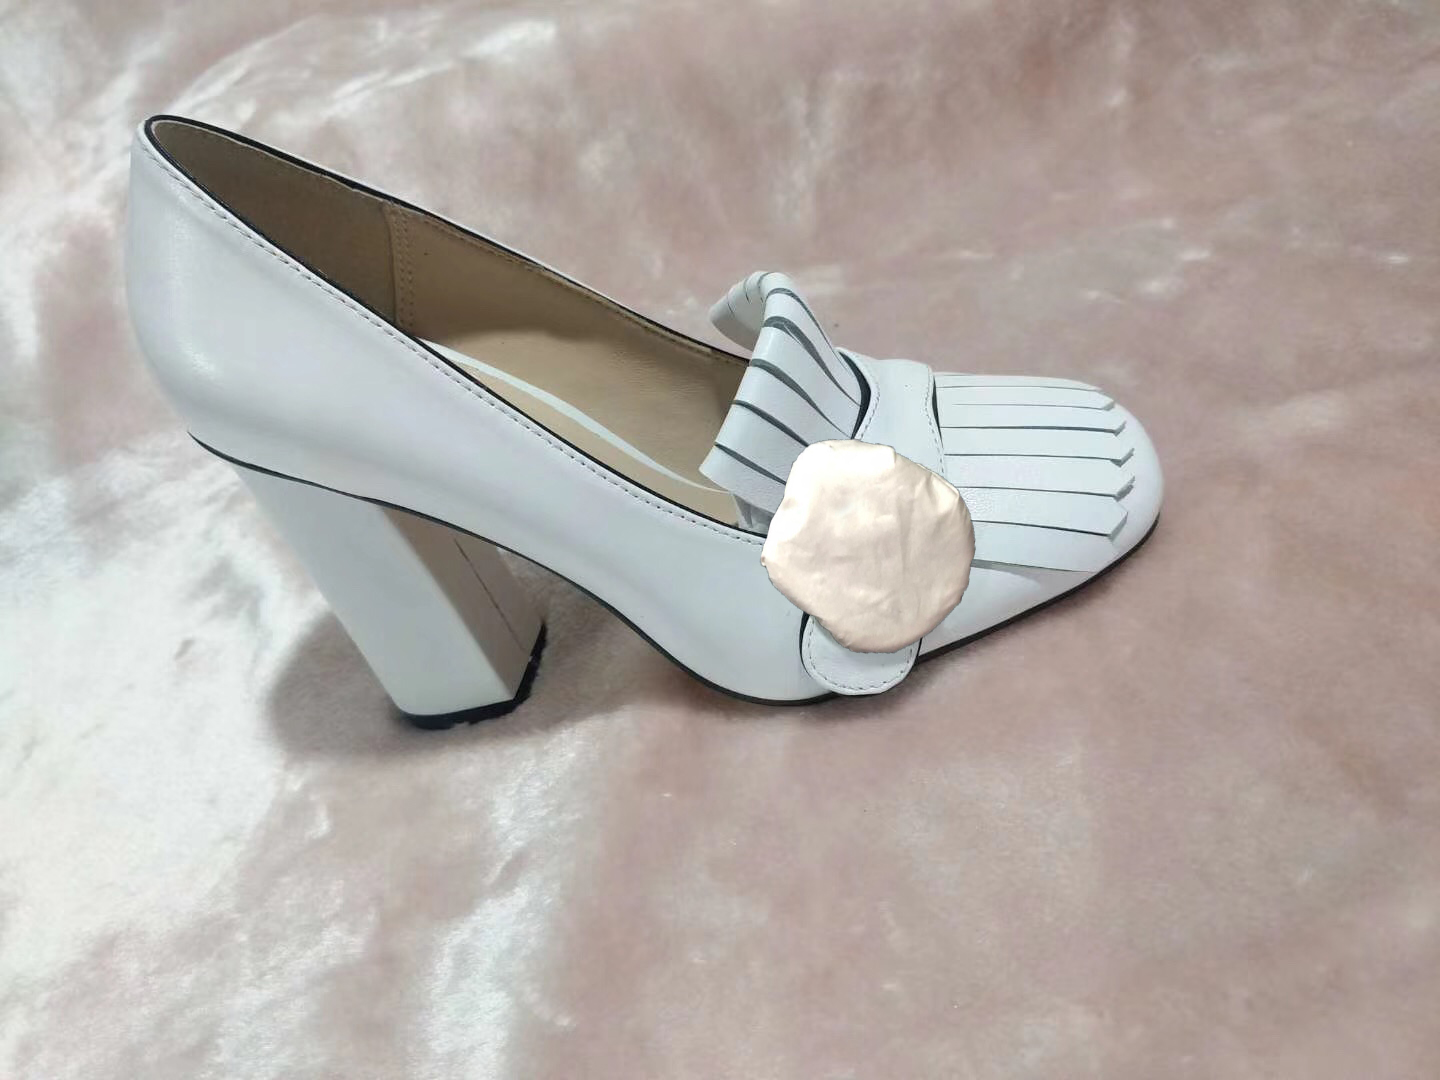 Hot sprzedaży- luksusowy projektant wysokie buty na obcasach statkiem wiosna jesień Sexy Bar konferencyjne kobieta buty 10cm metalowa klamra grubych obcas buty 34-42